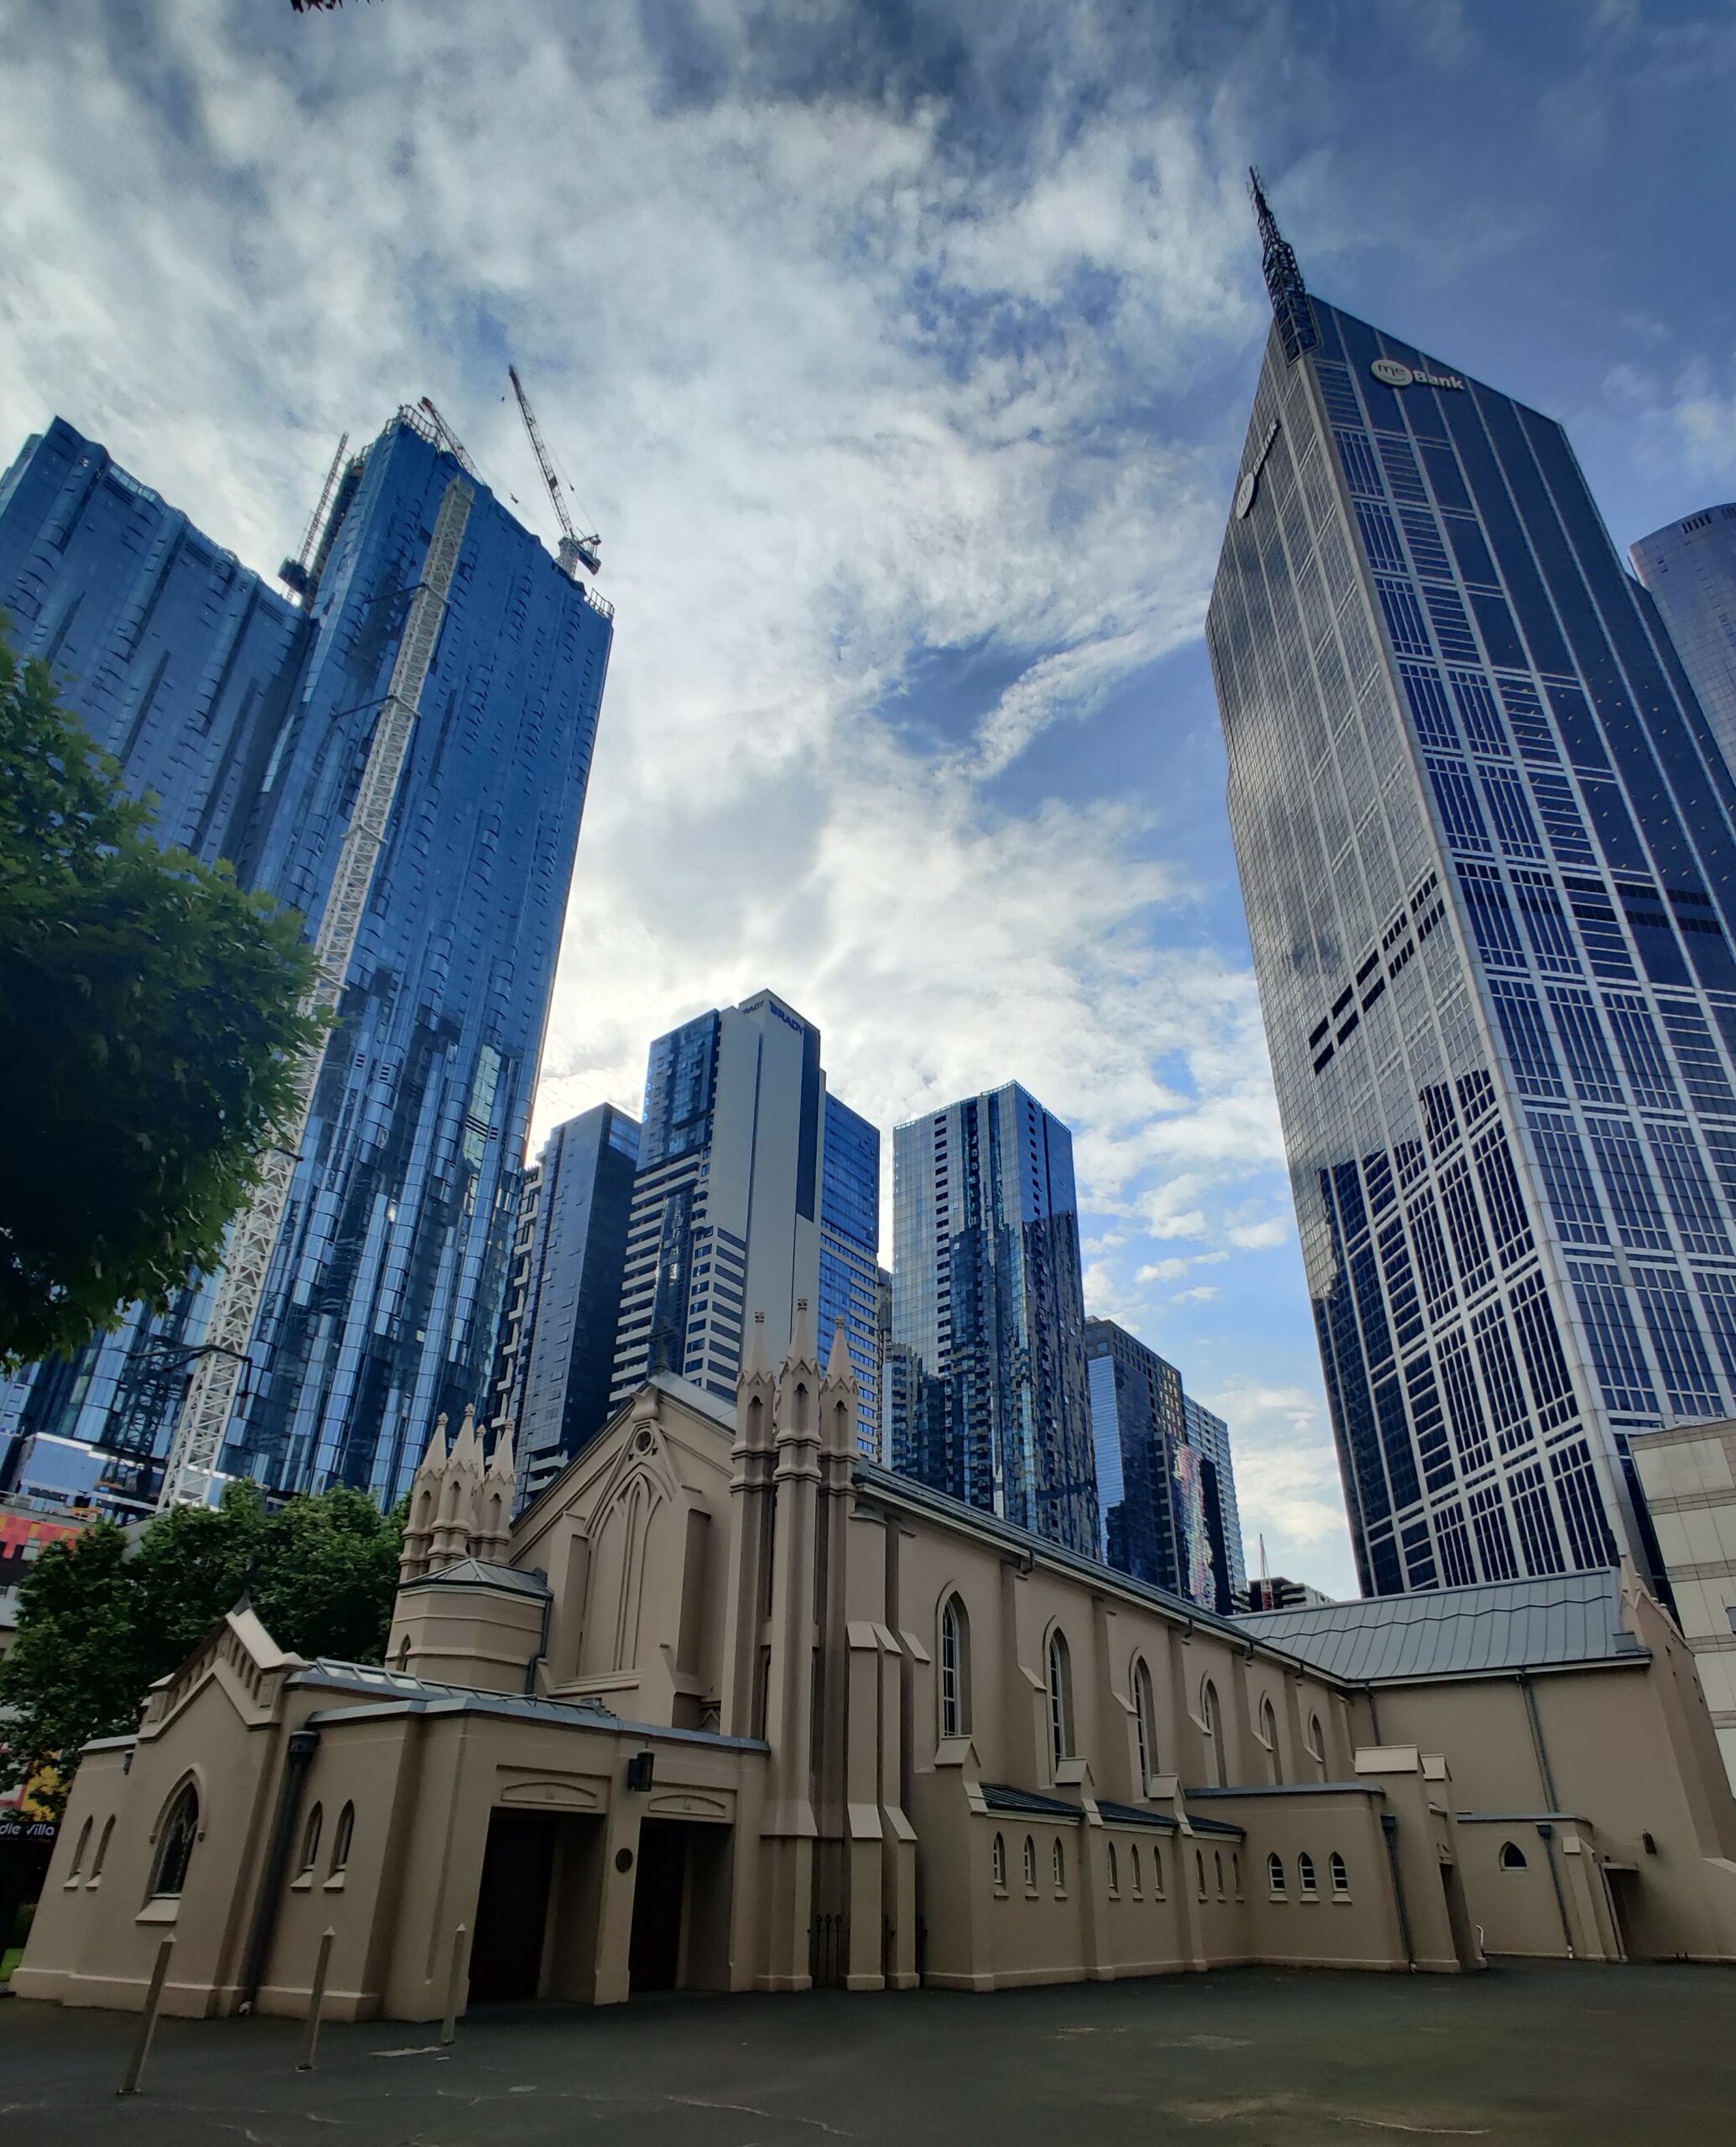 Melbourne’s Earliest Buildings Walking Tour